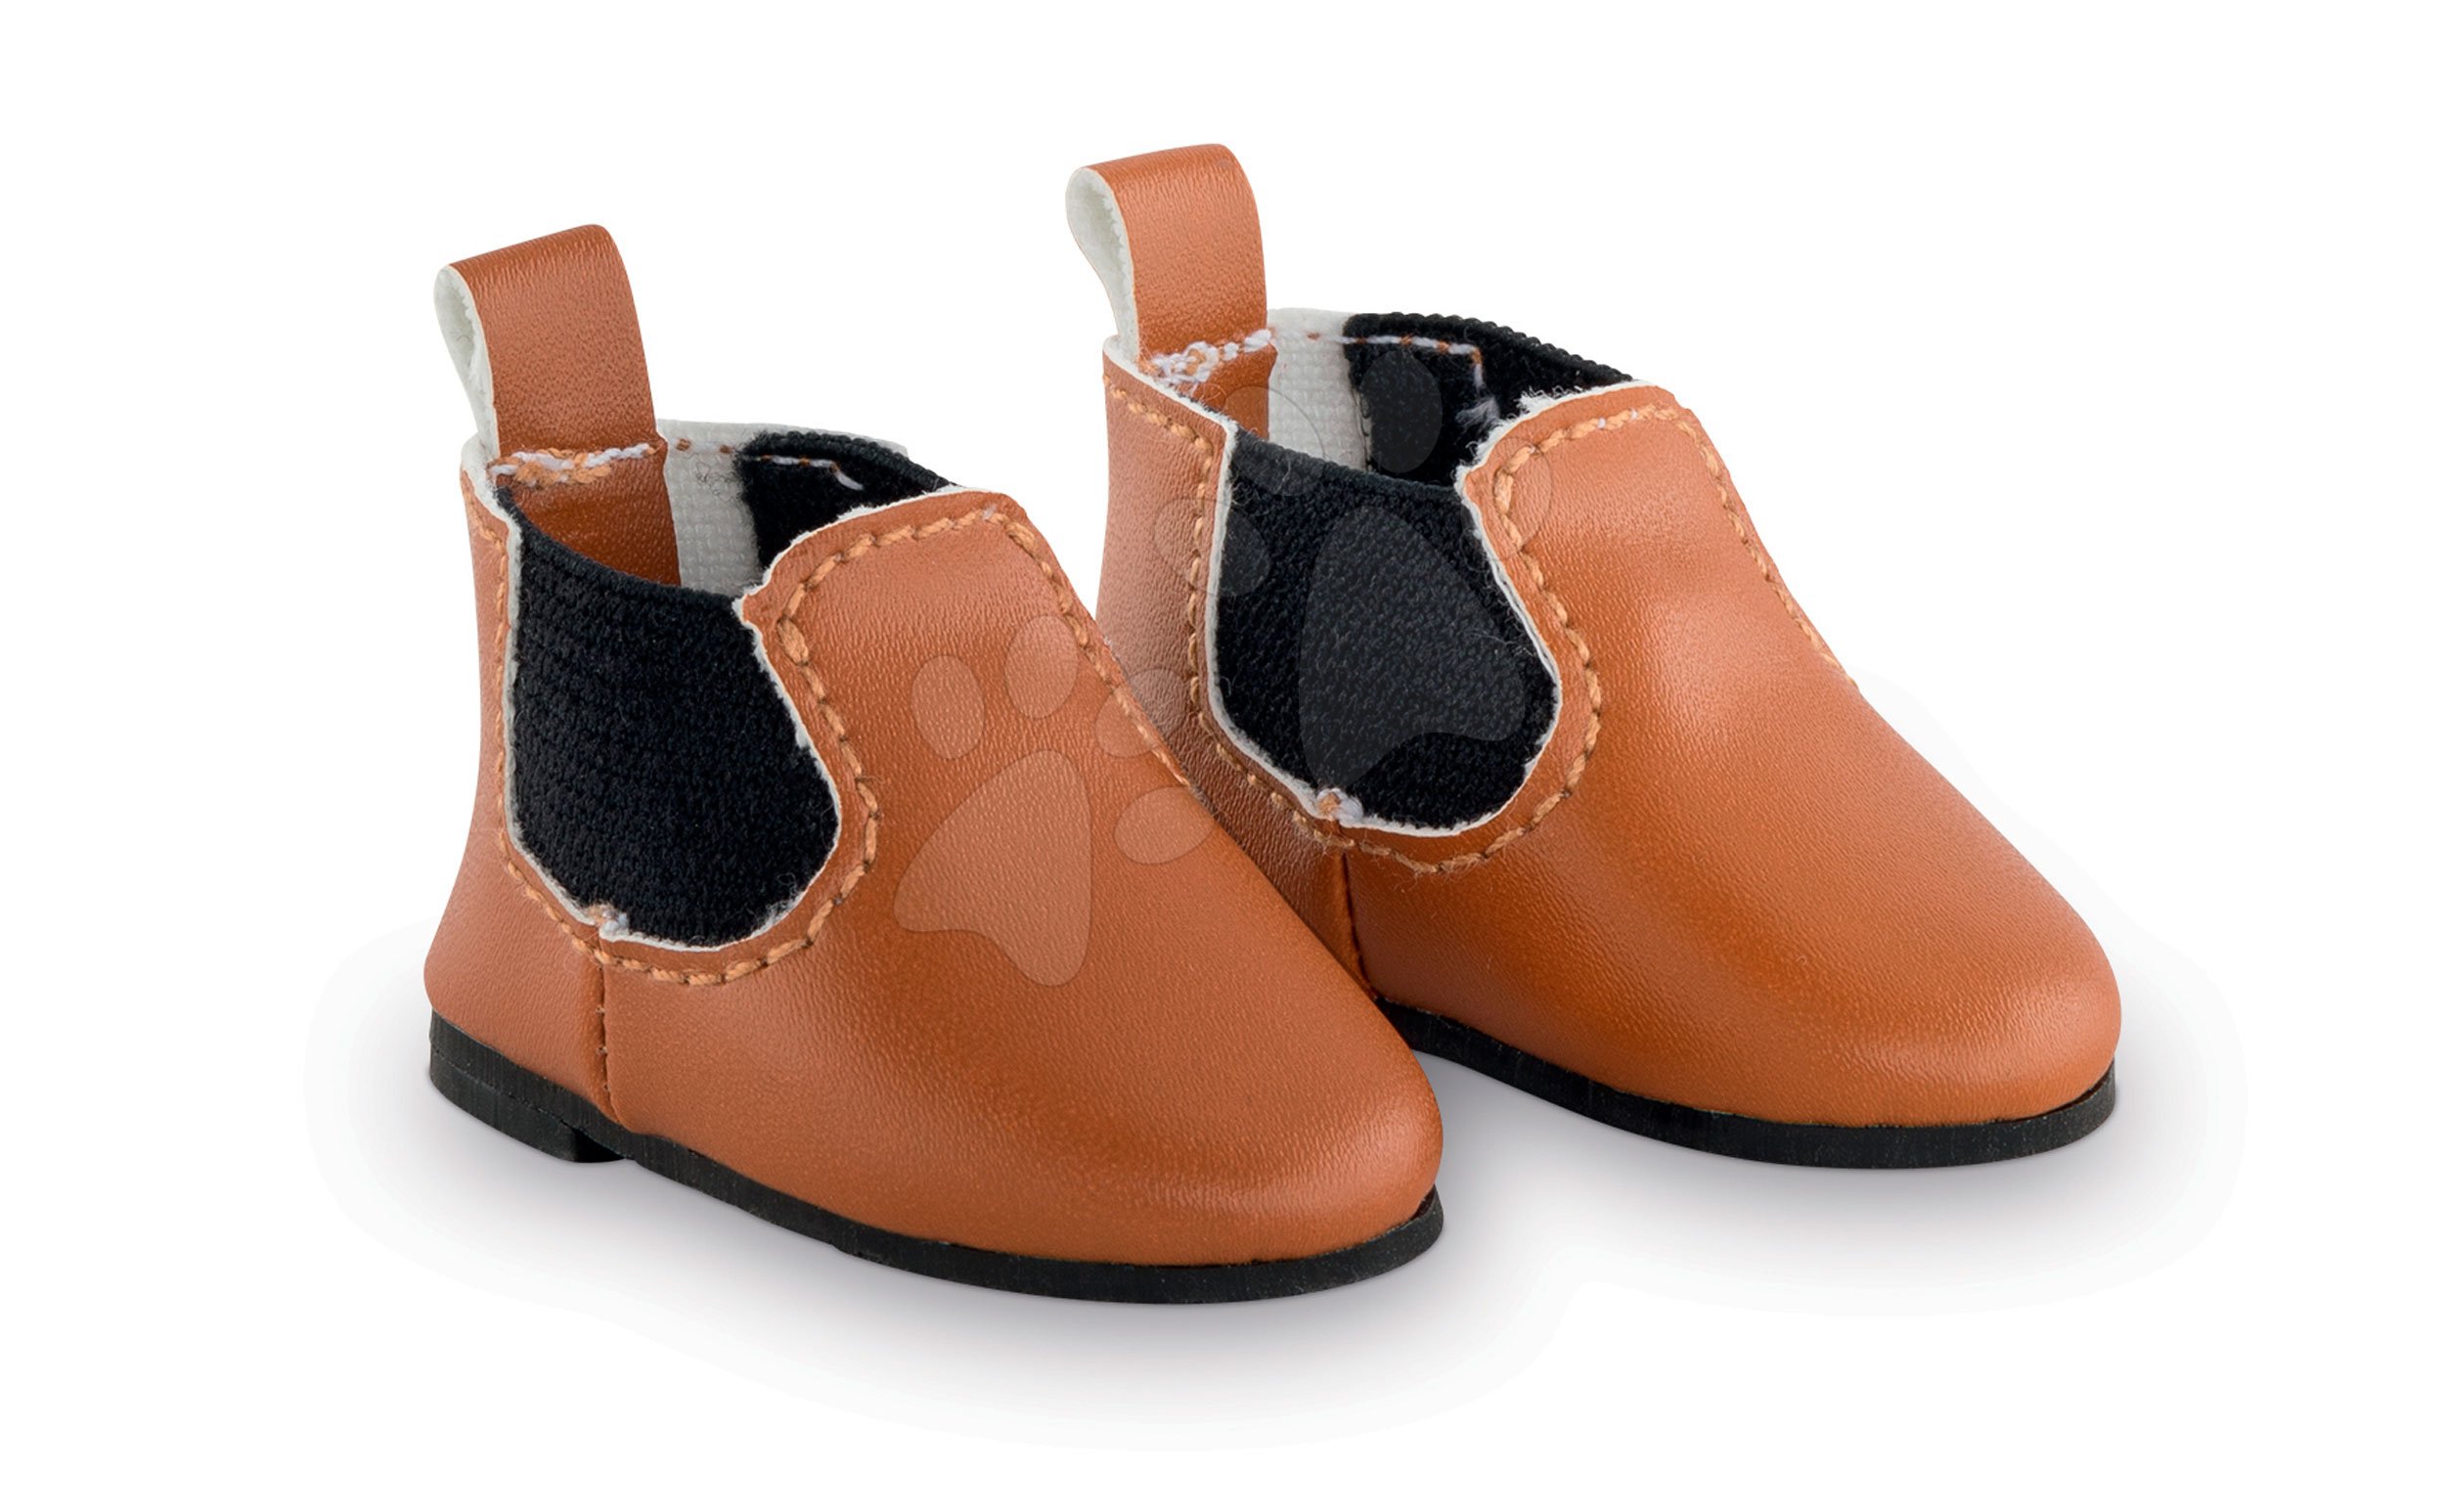 Topánky Boots Ma Corolle pre 36 cm bábiku od 4 rokov